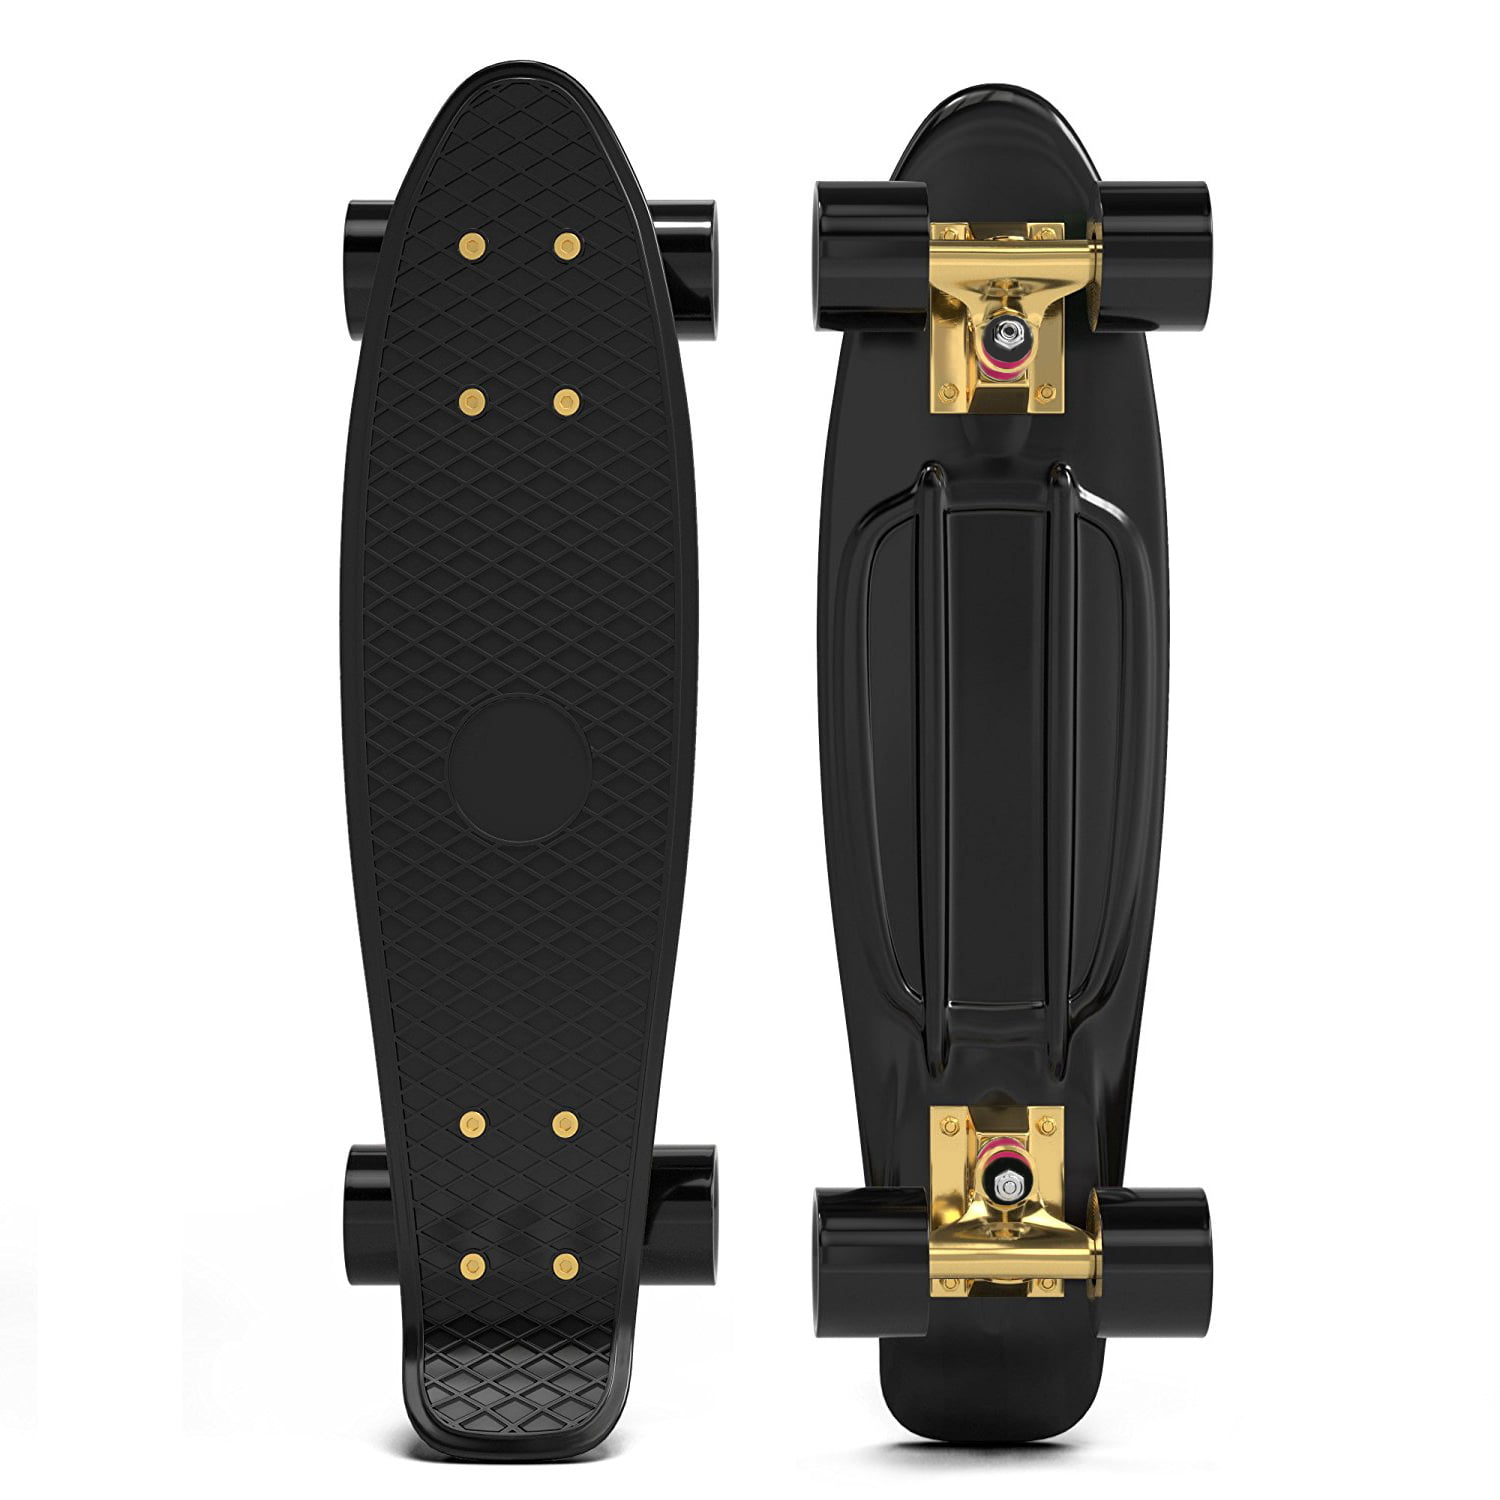 Miniboard LED 22" Skateboard Cruiser Deckboard Komplett Funboard Pennyboard c 03 